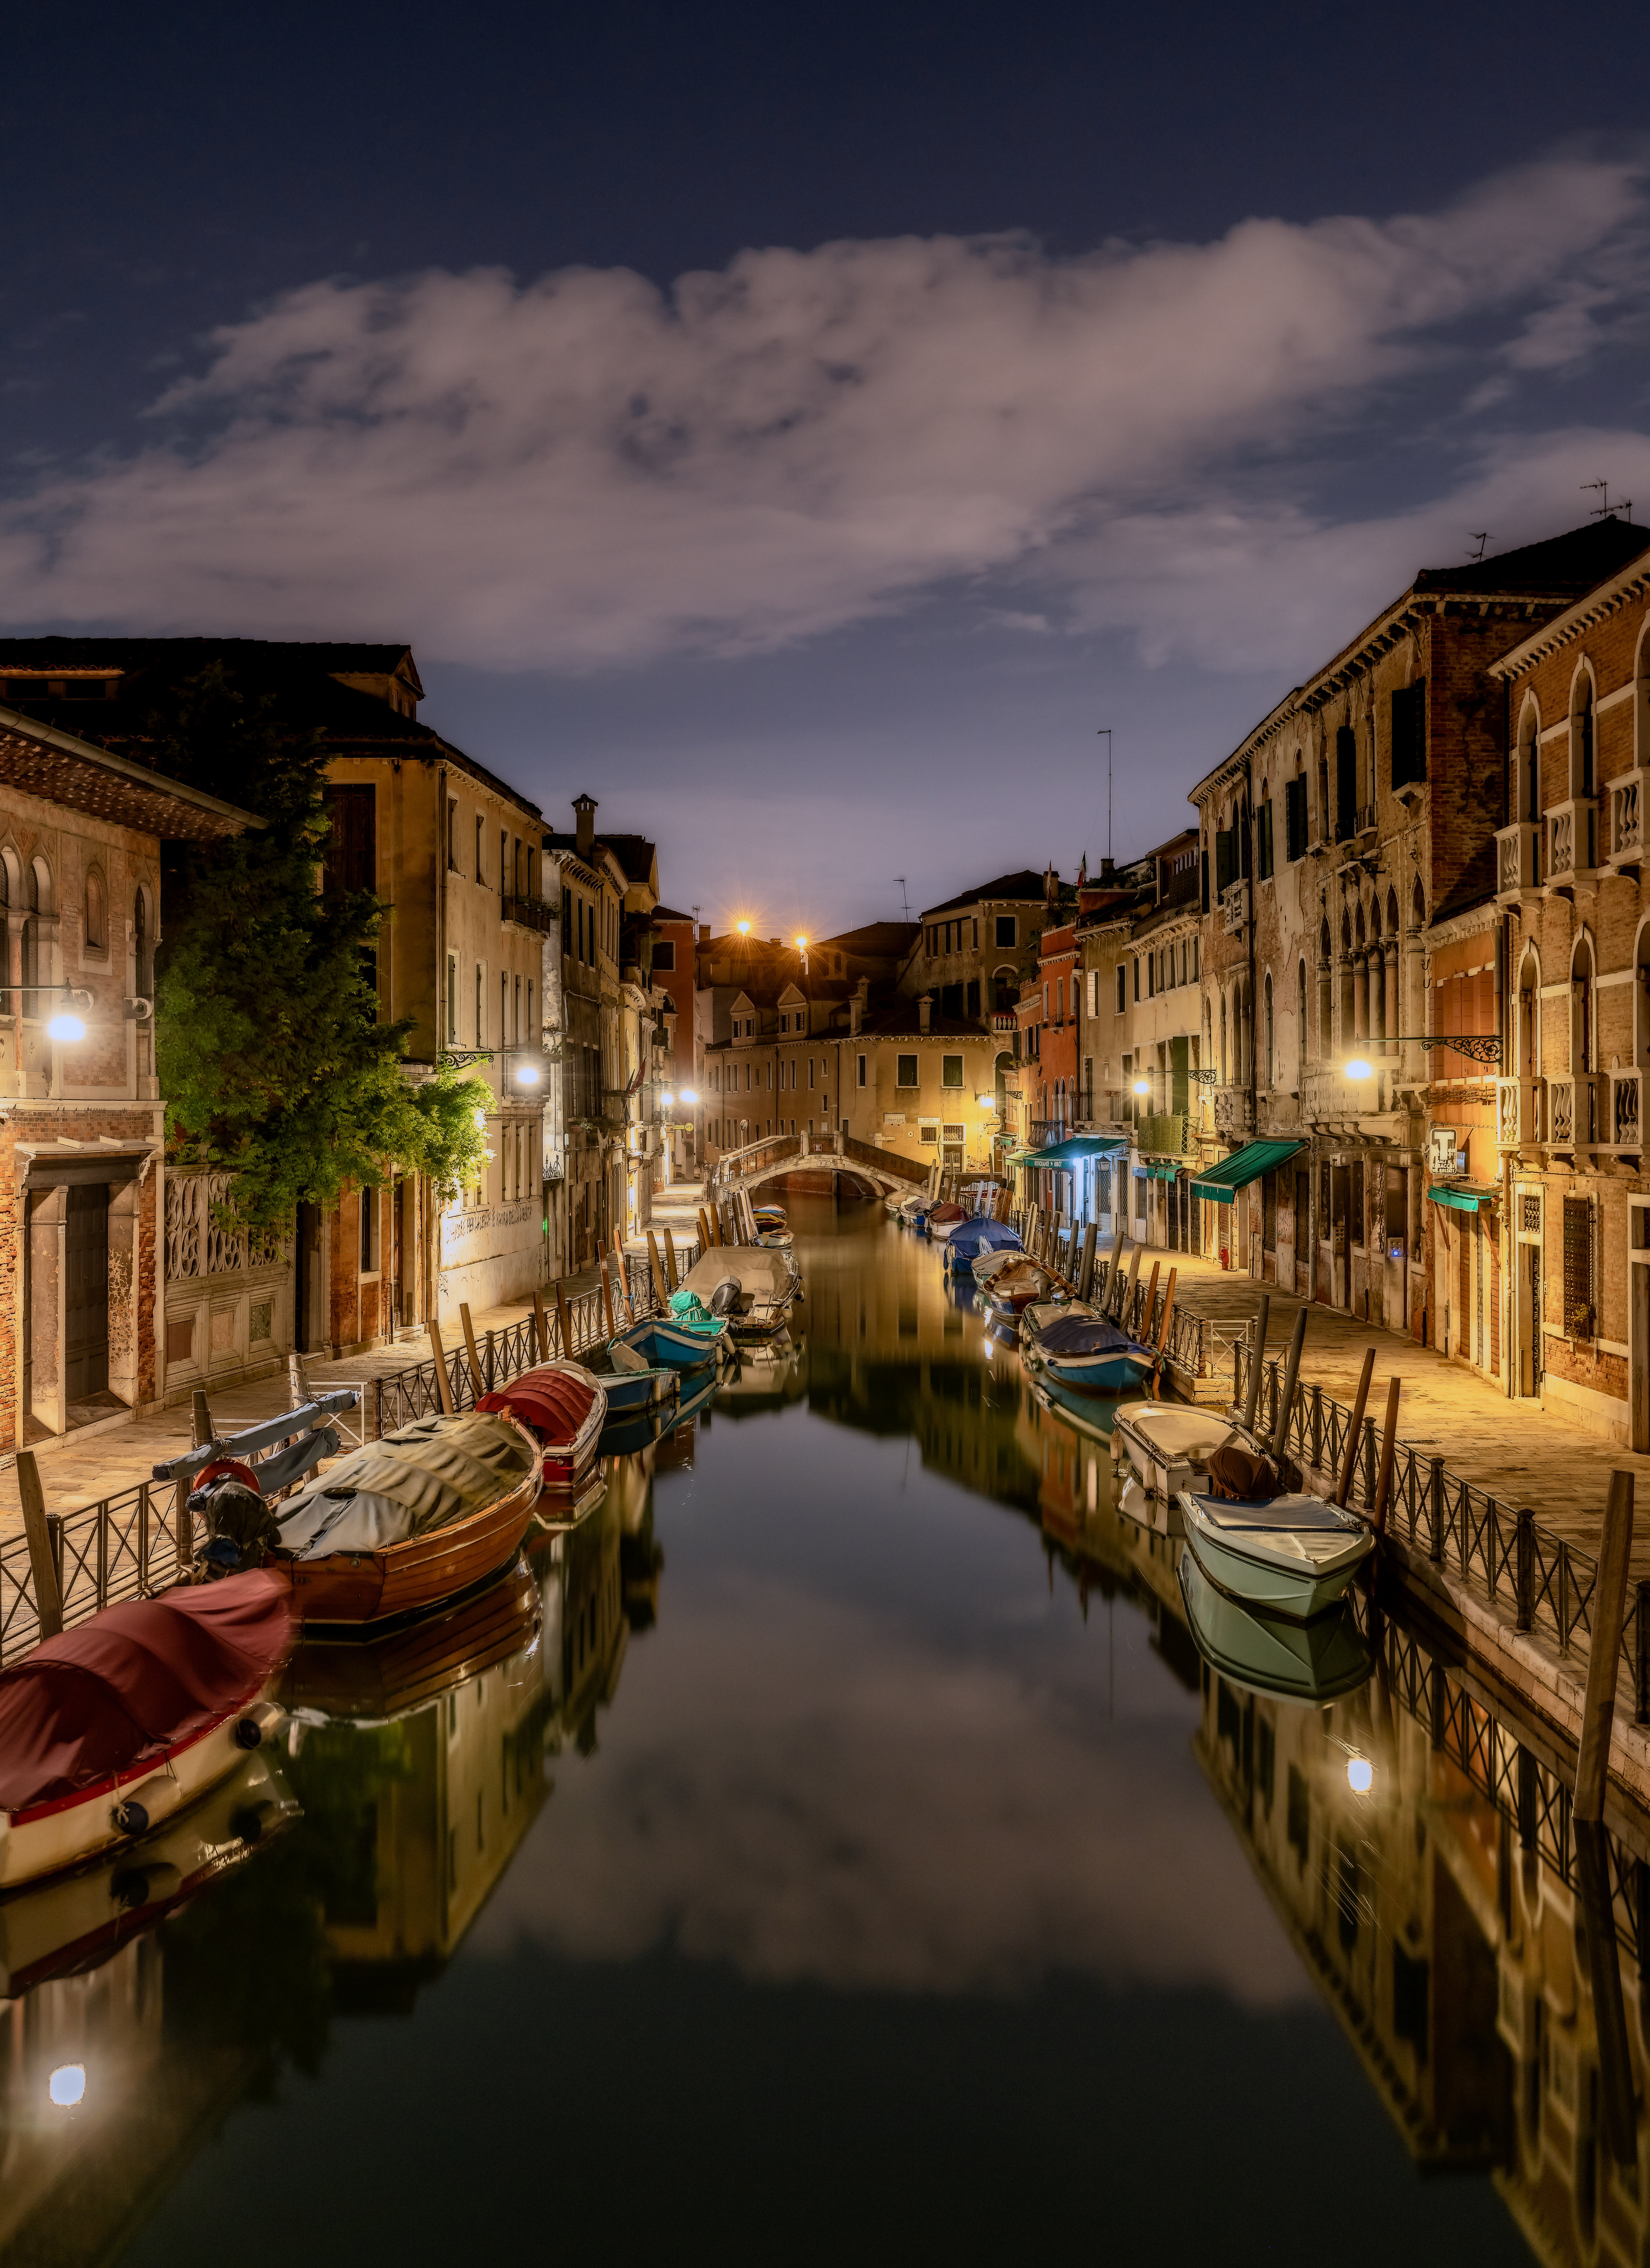 Обои для рабочего стола Венеция Италия Водный канал Лодки Вечер Дома Города  для мобильного телефона город Здания